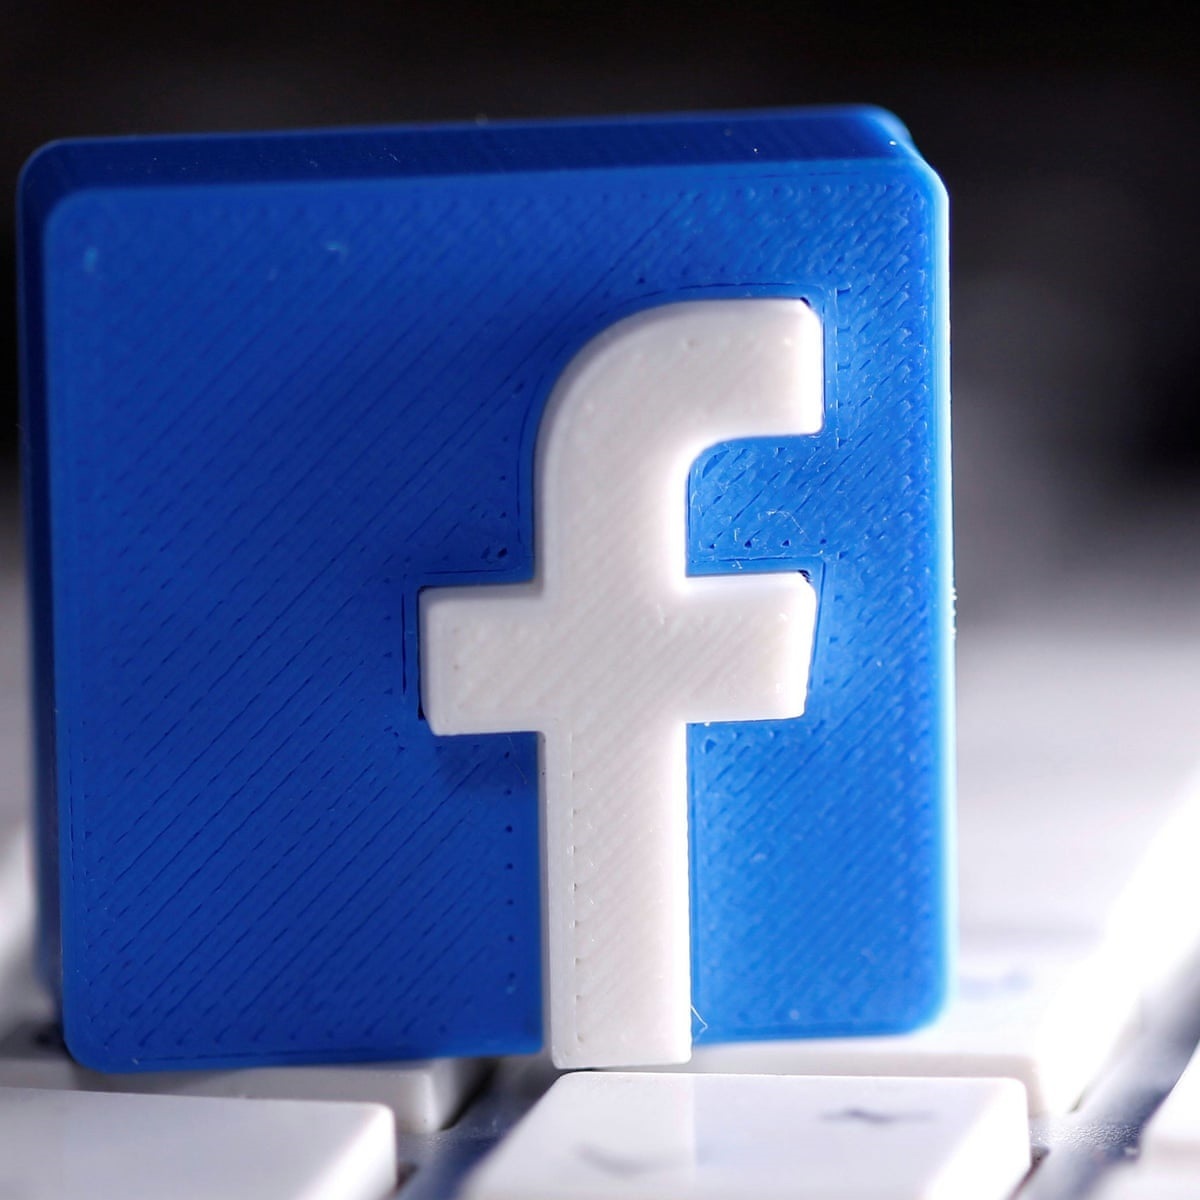 Facebook khoá tài khoản có liên hệ với các nhóm cực đoan